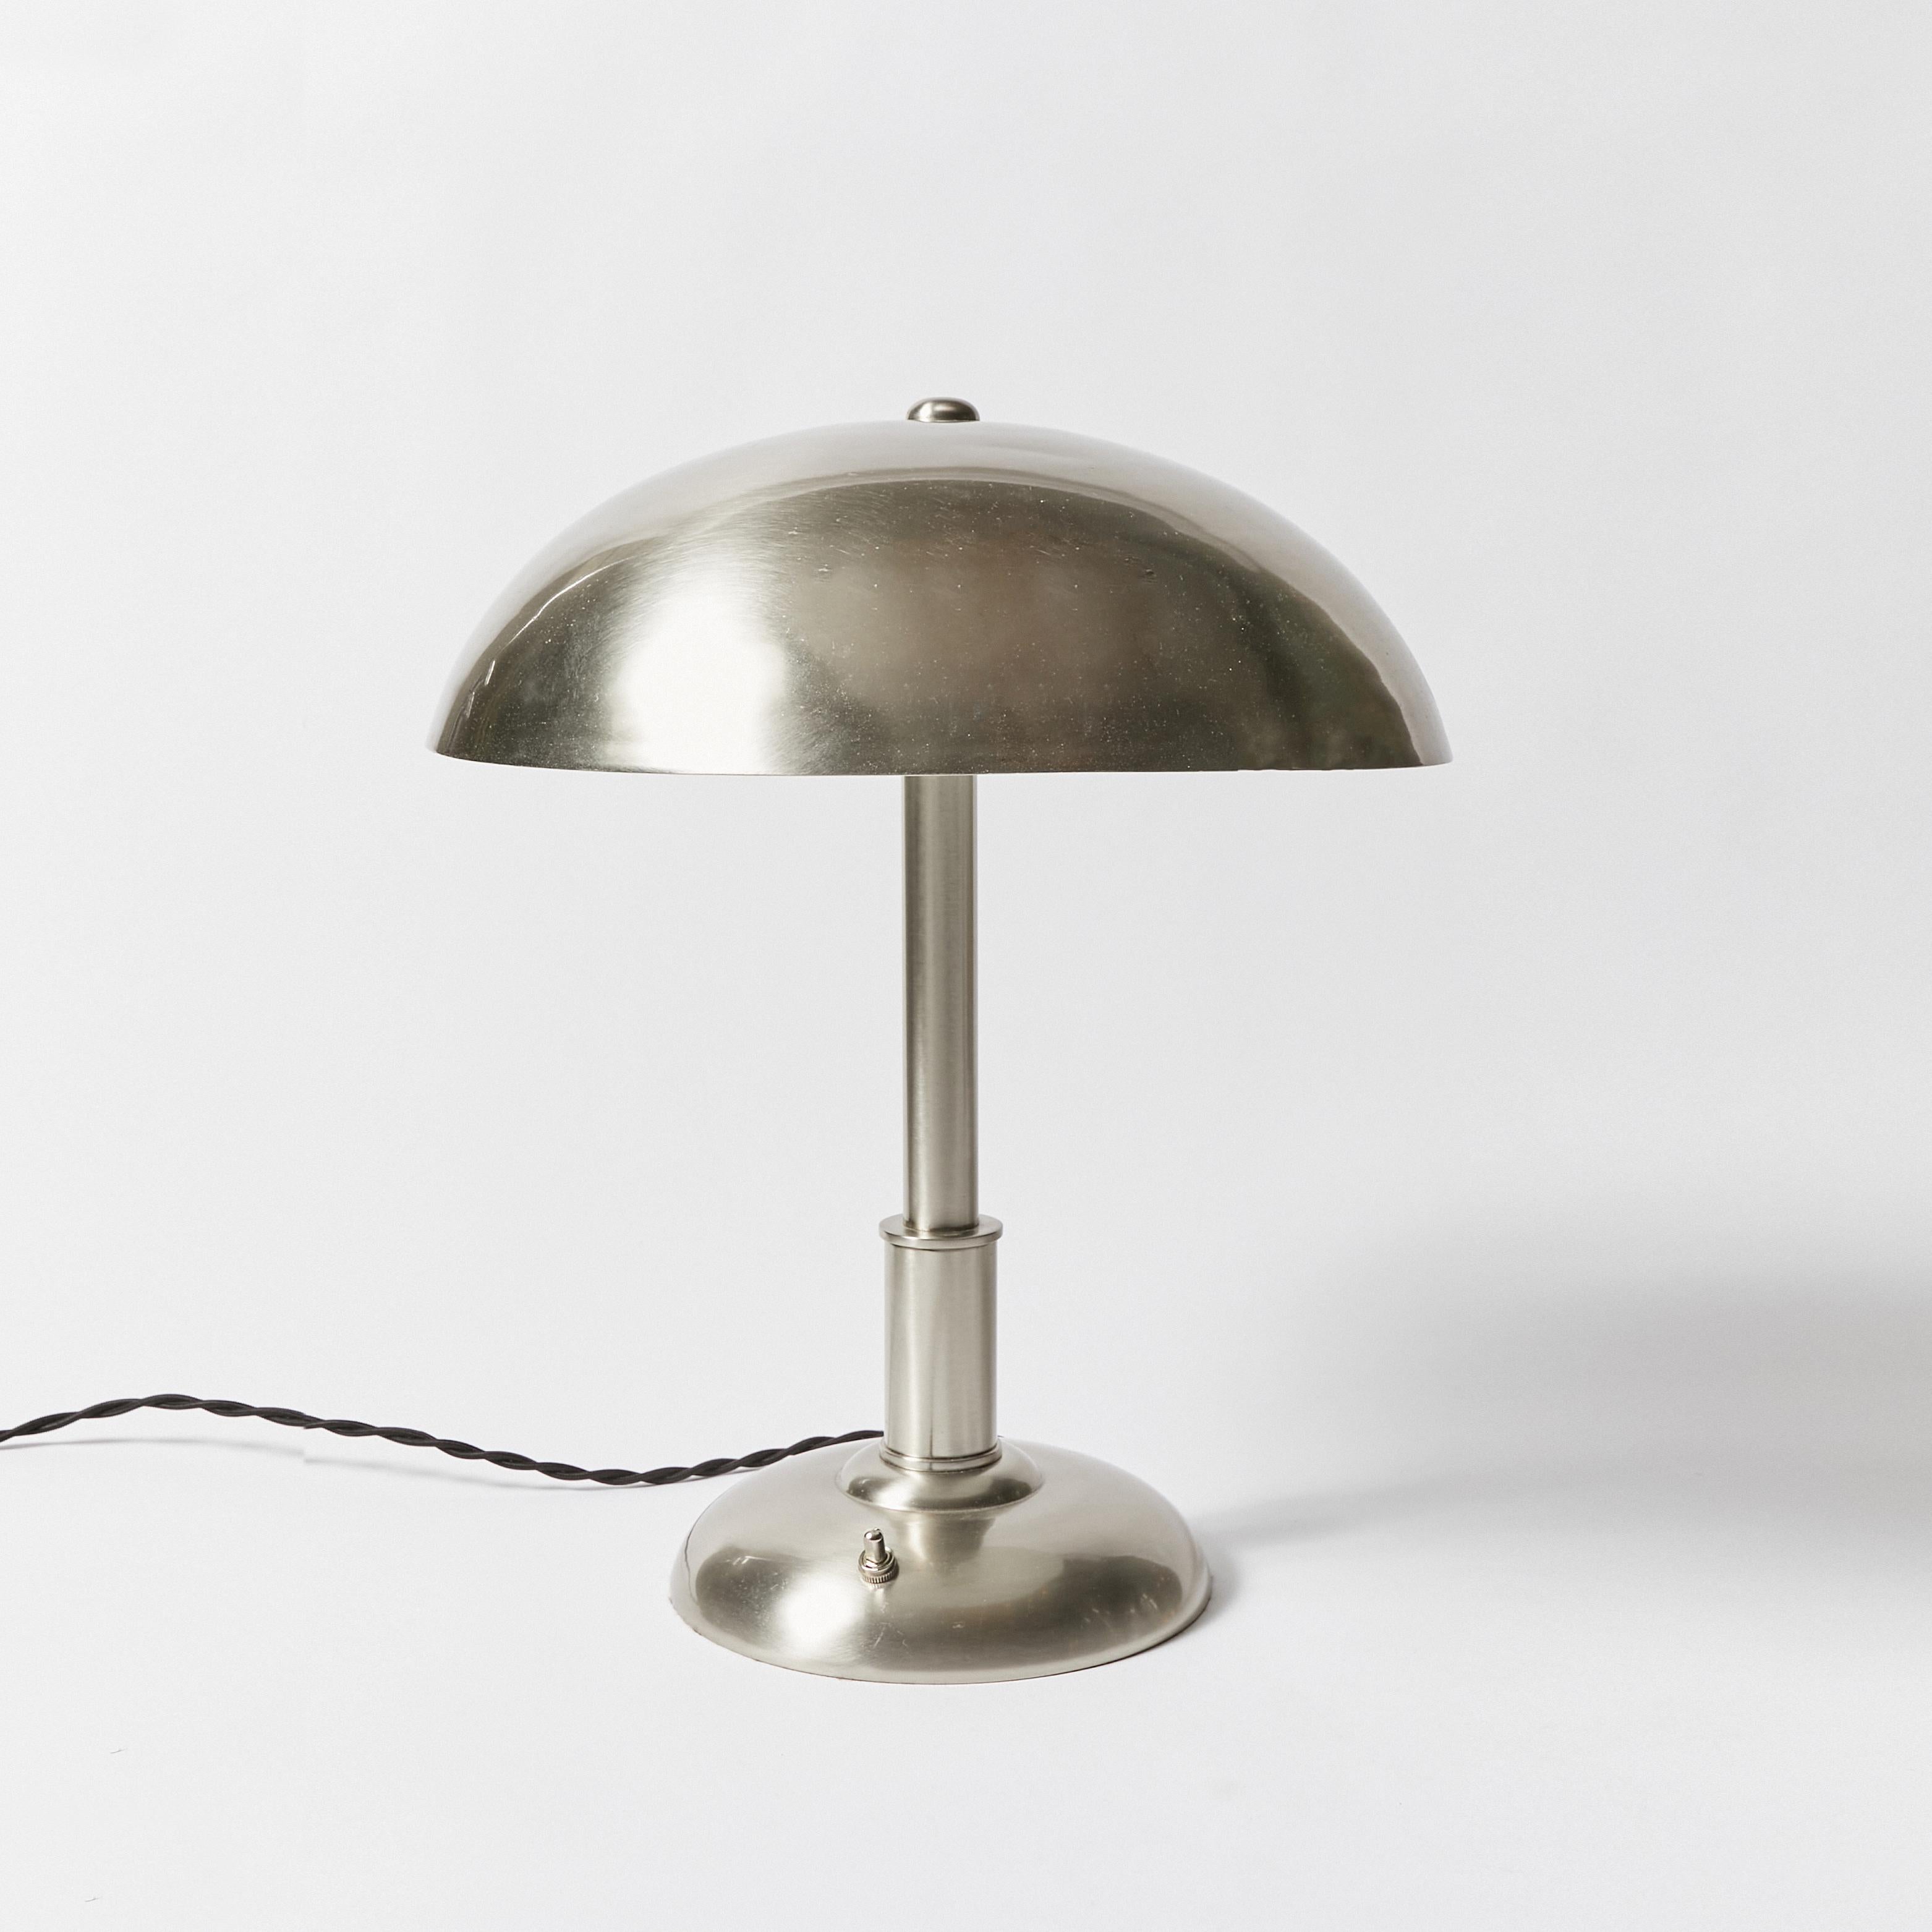 Schreibtischlampe im Art-Deco-Stil mit gewölbtem Metallschirm.